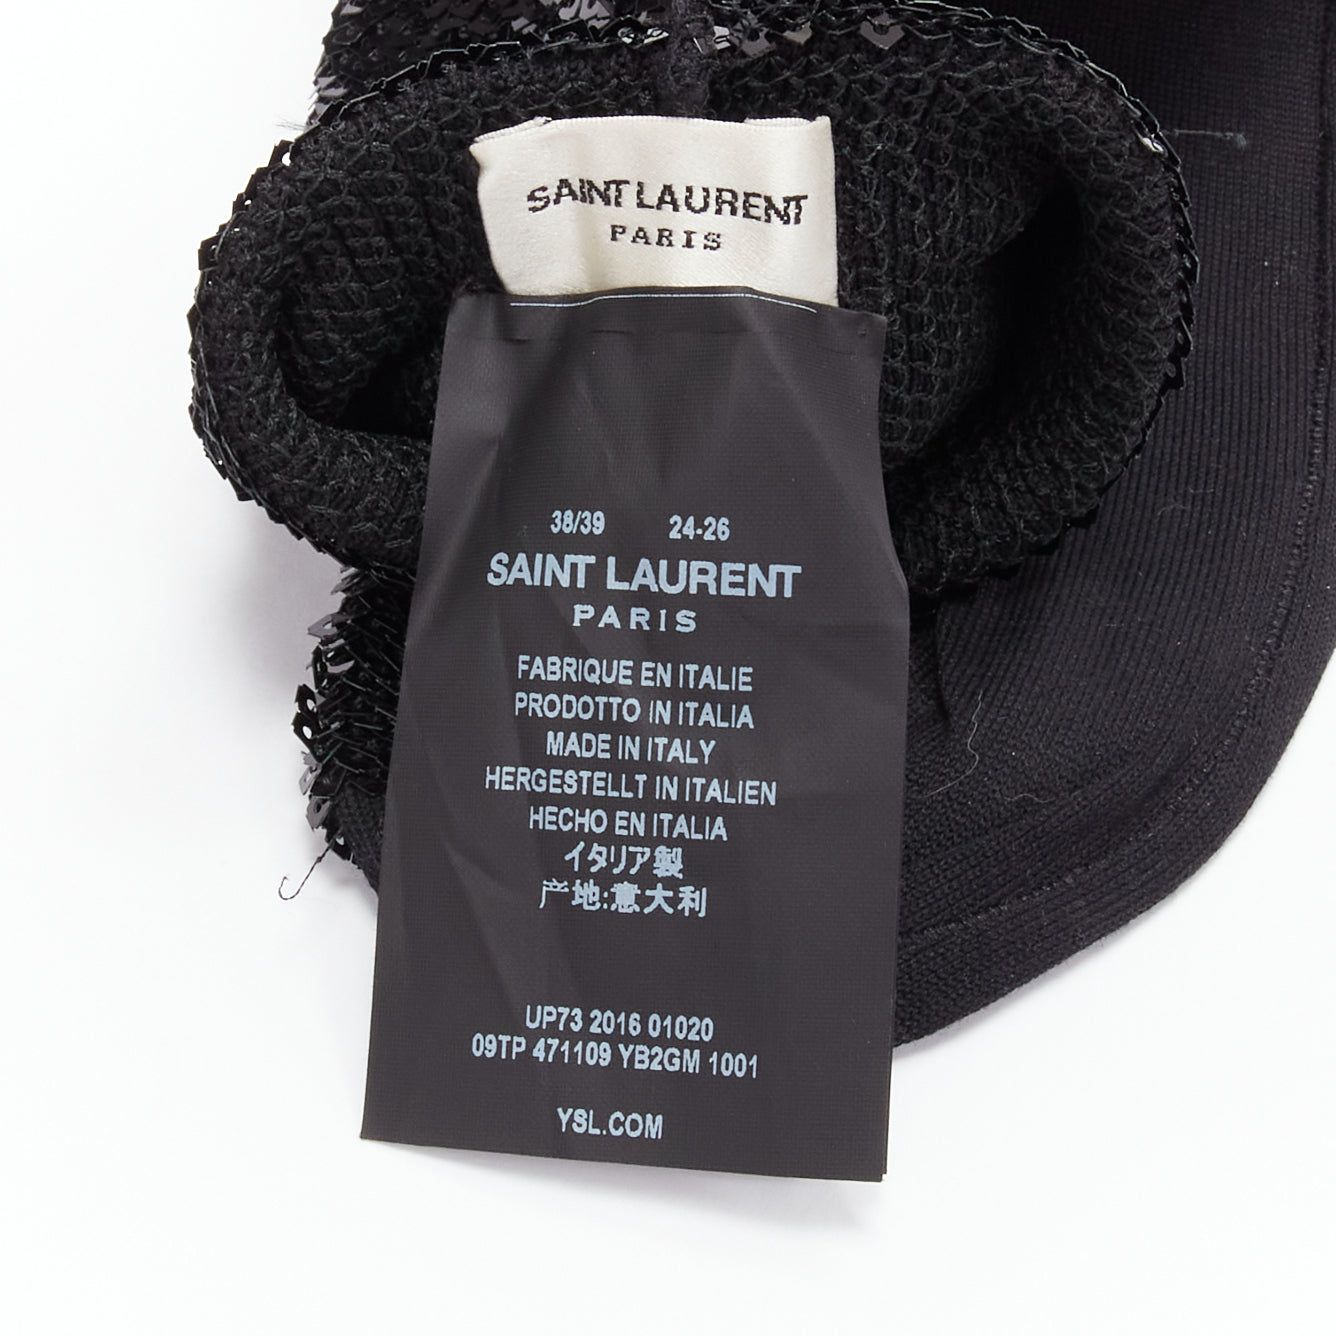 Saint Laurent Paris SAINT LAURENT 2016 black sequins cotton blend rolled cuffed socks EUR38 Size ONE SIZE - 5 Preview